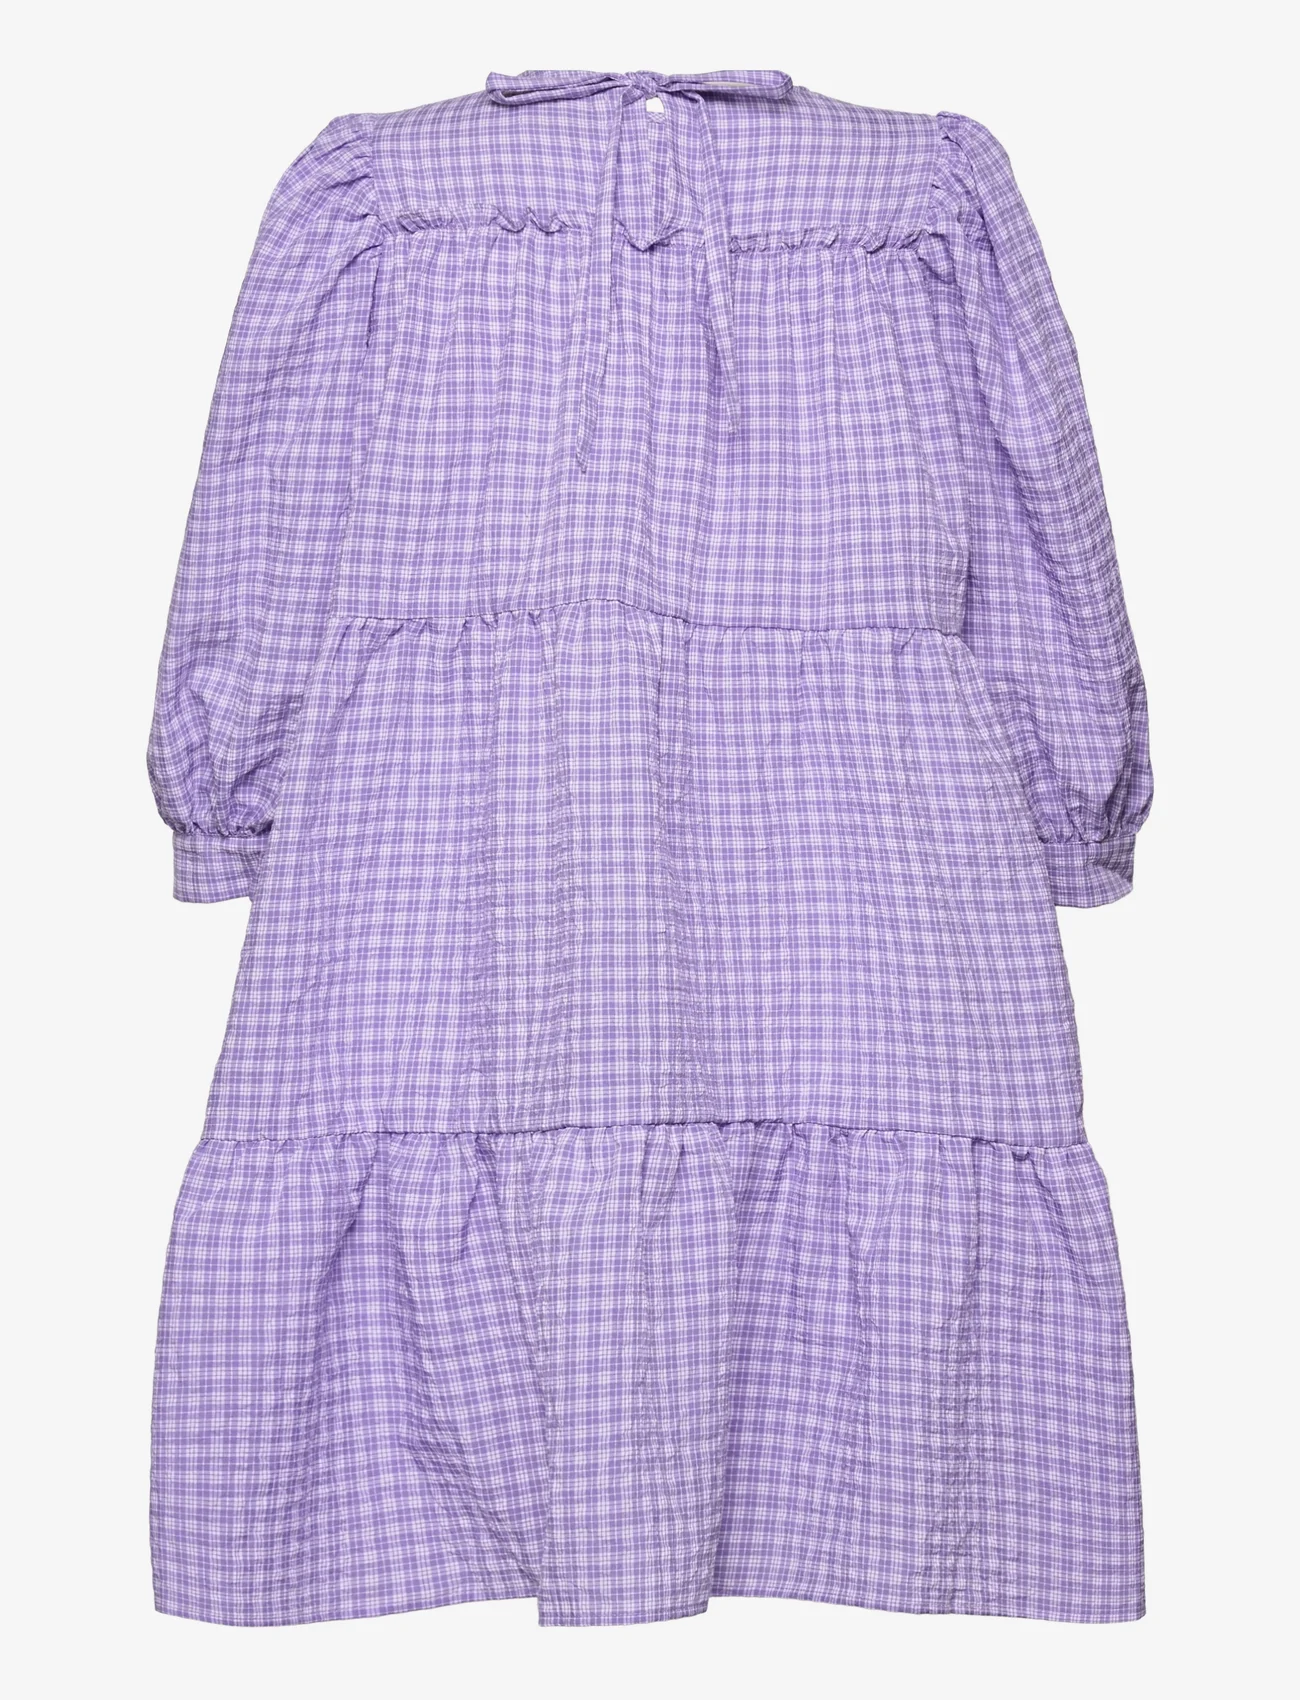 Minus - Rowen kjole - korta klänningar - purple checked - 1